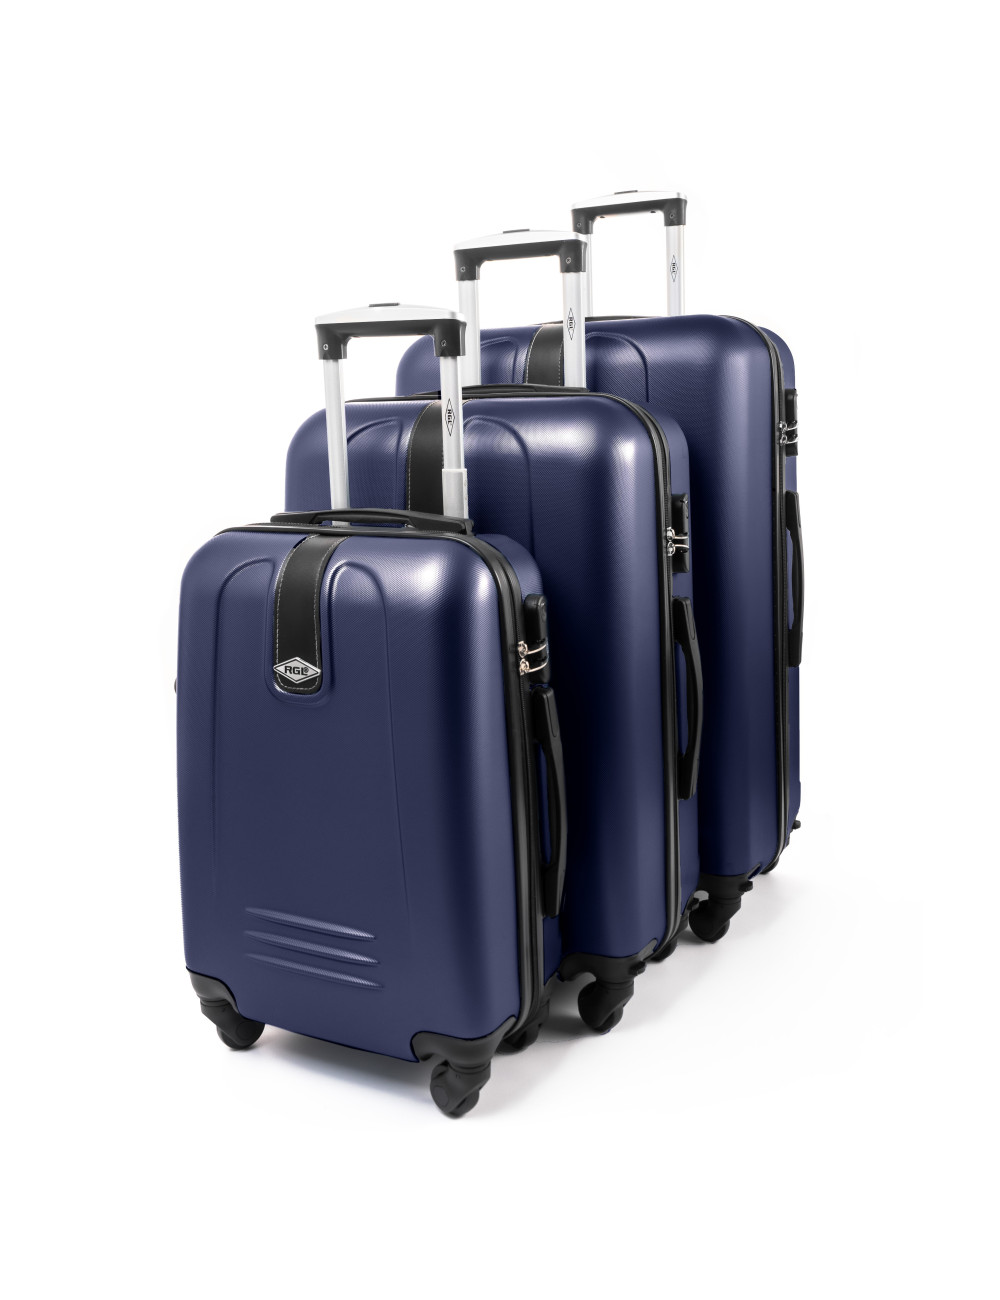 Zestaw walizek podróżnych 3w1 910  (XXL XL L) - Granatowy